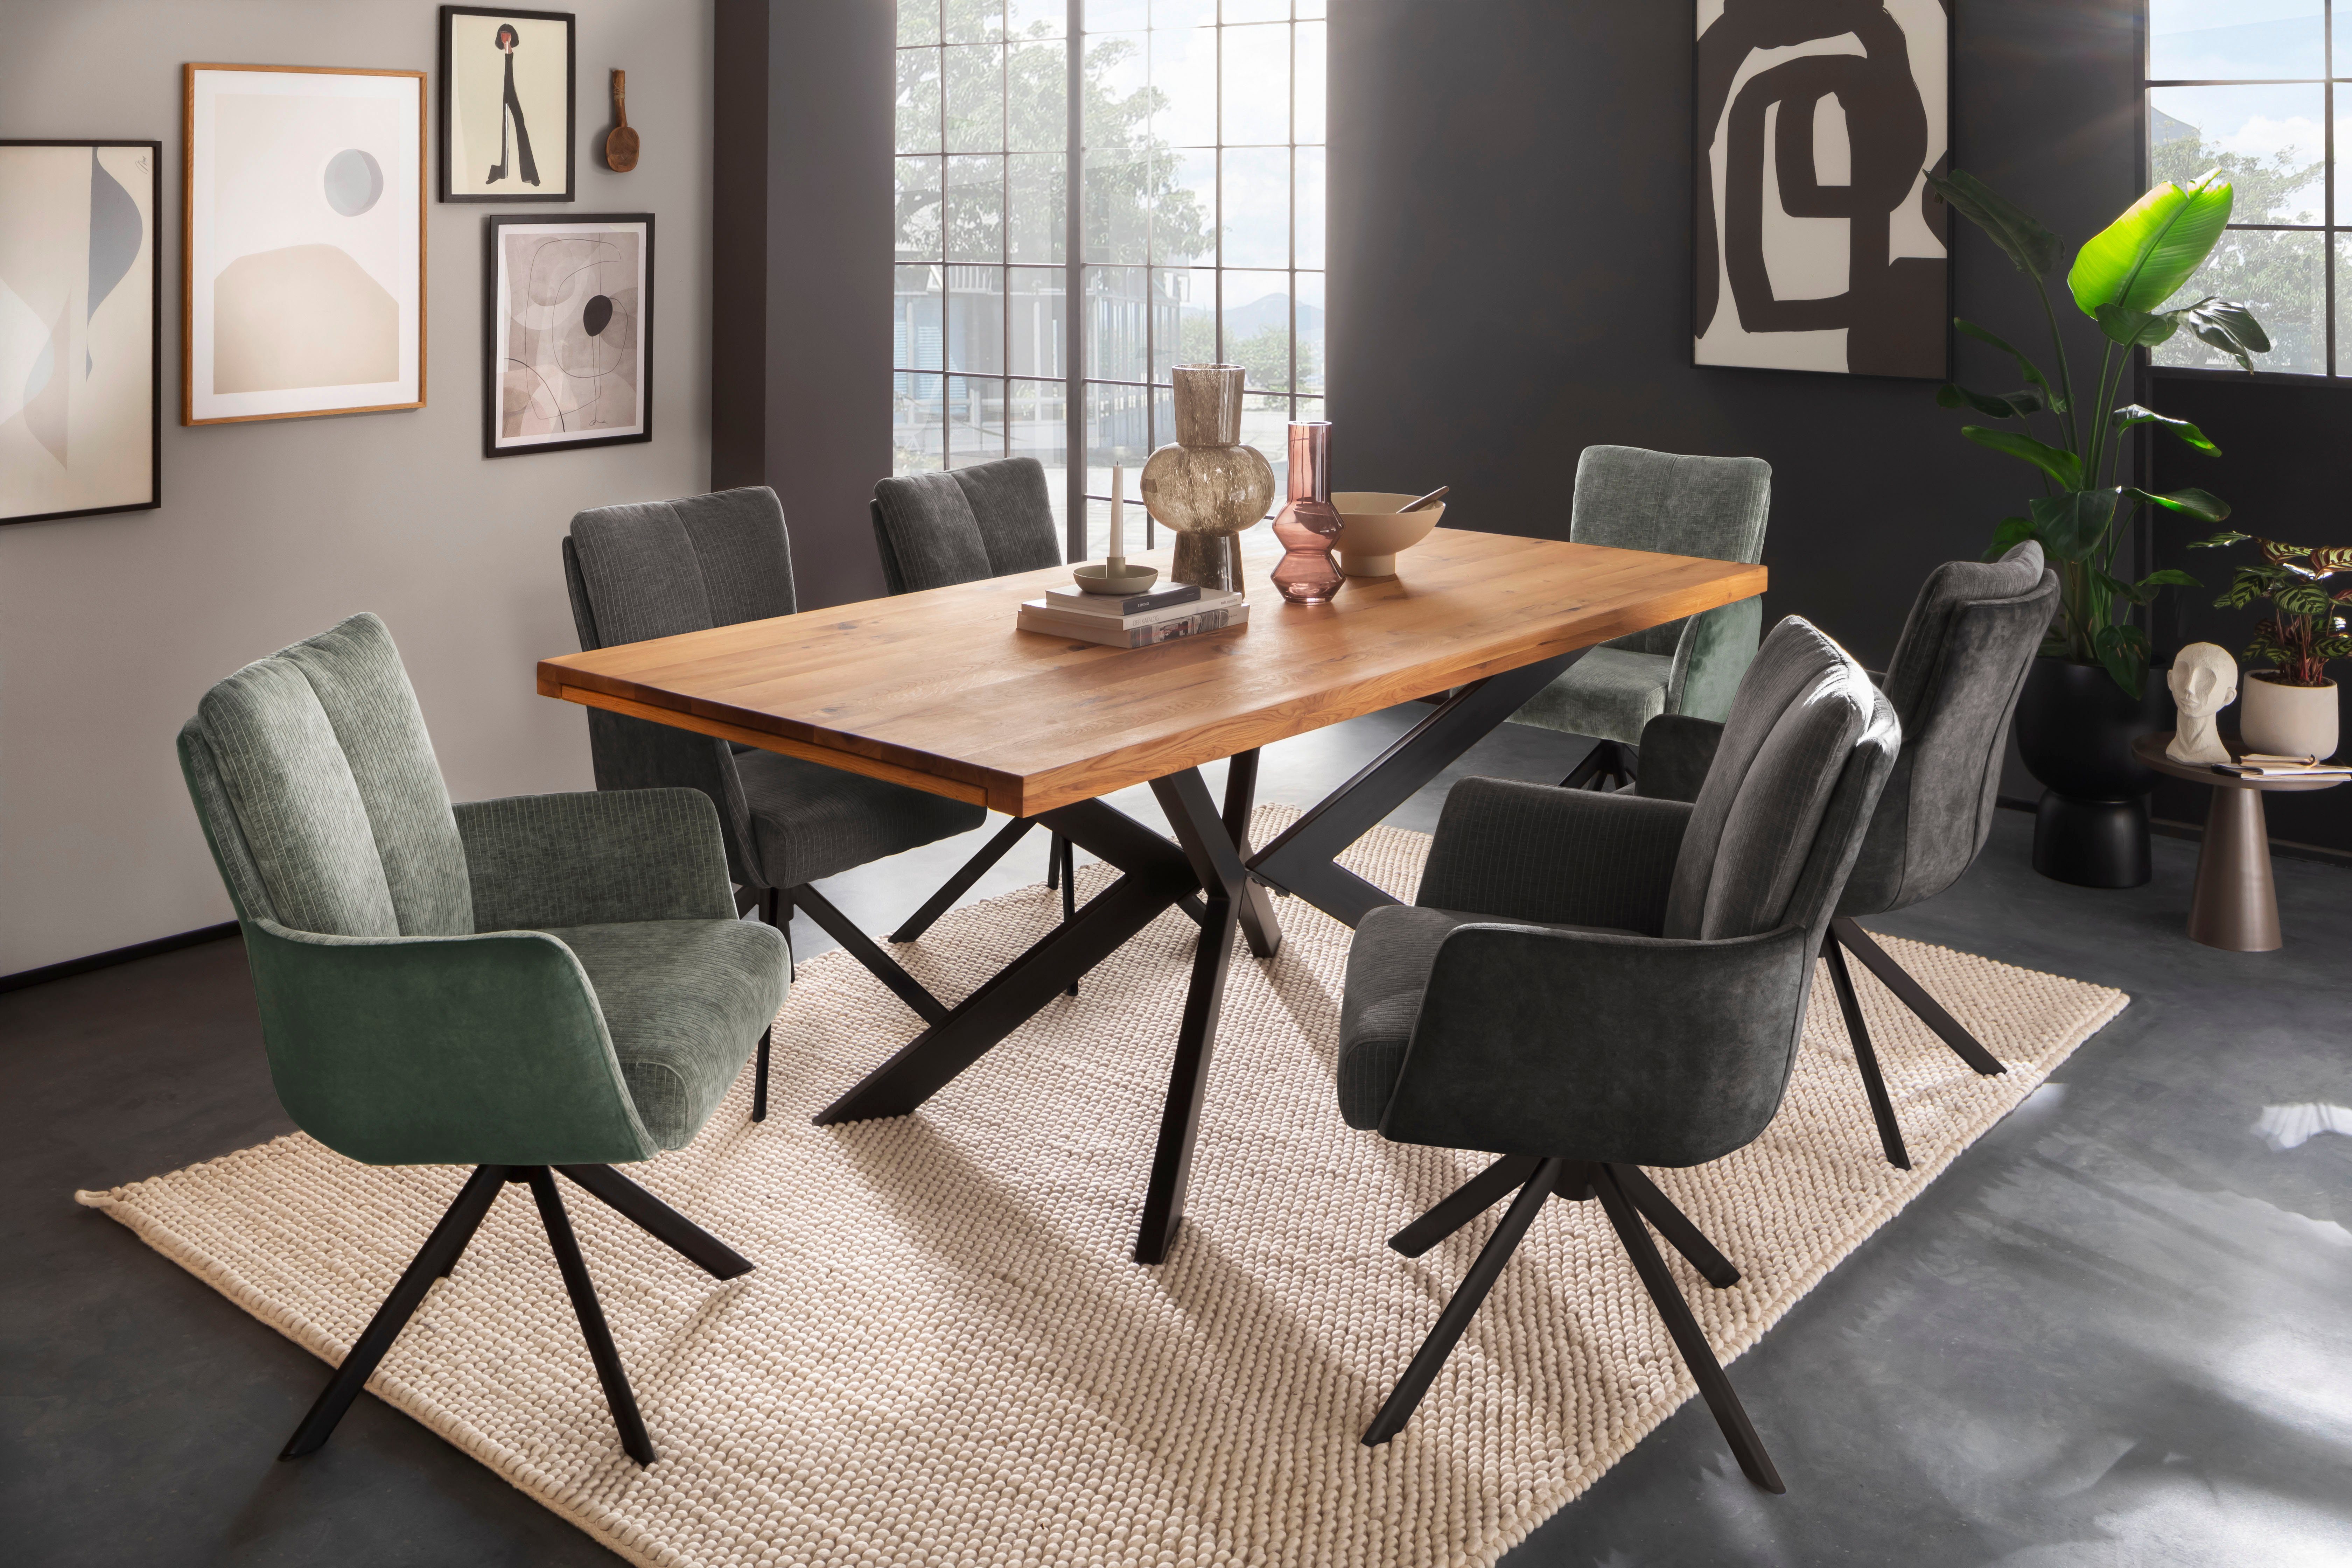 MCA matt | furniture MALIA pastellgrün | pastellgrün schwarz Esszimmerstuhl lackiert